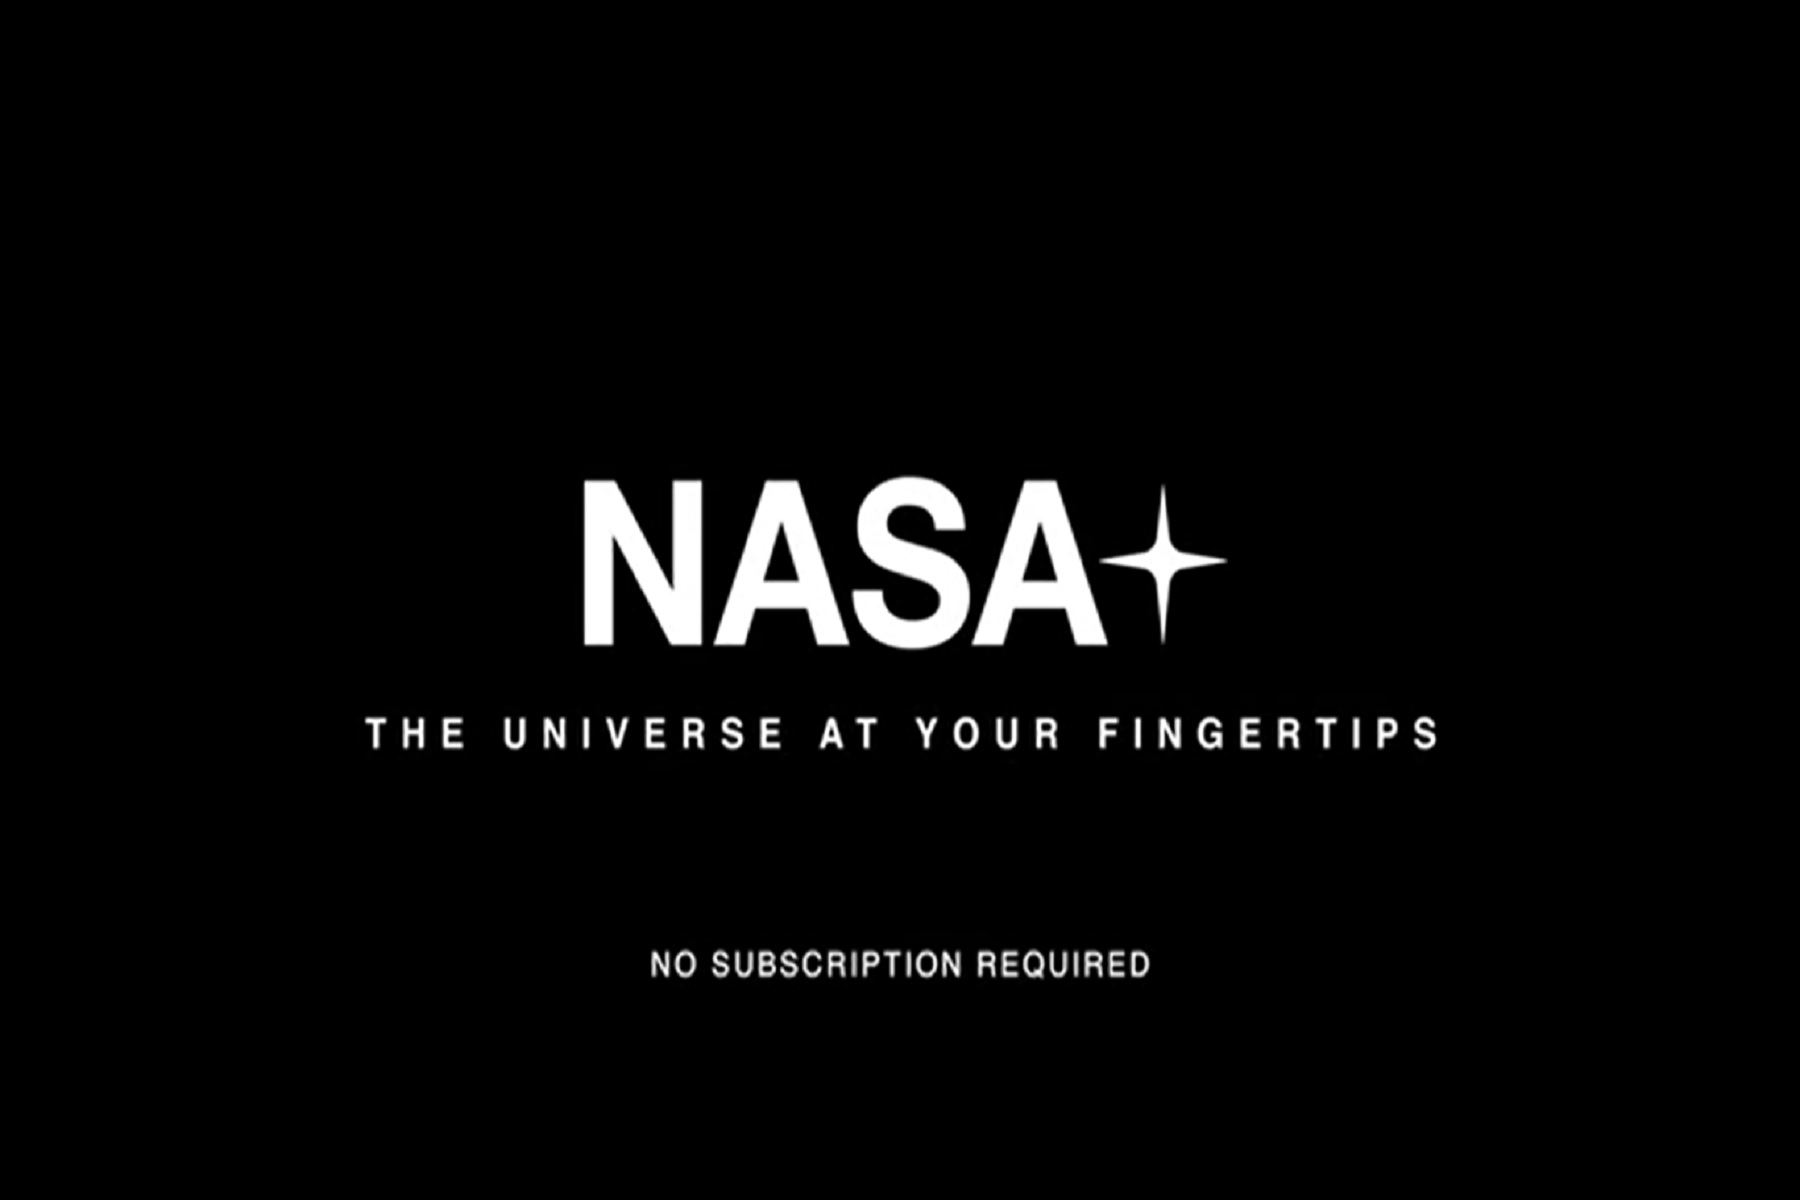 Estará disponible en la mayoría de las principales plataformas a través de la aplicación de la NASA, en dispositivos móviles y tabletas con iOS y Android.